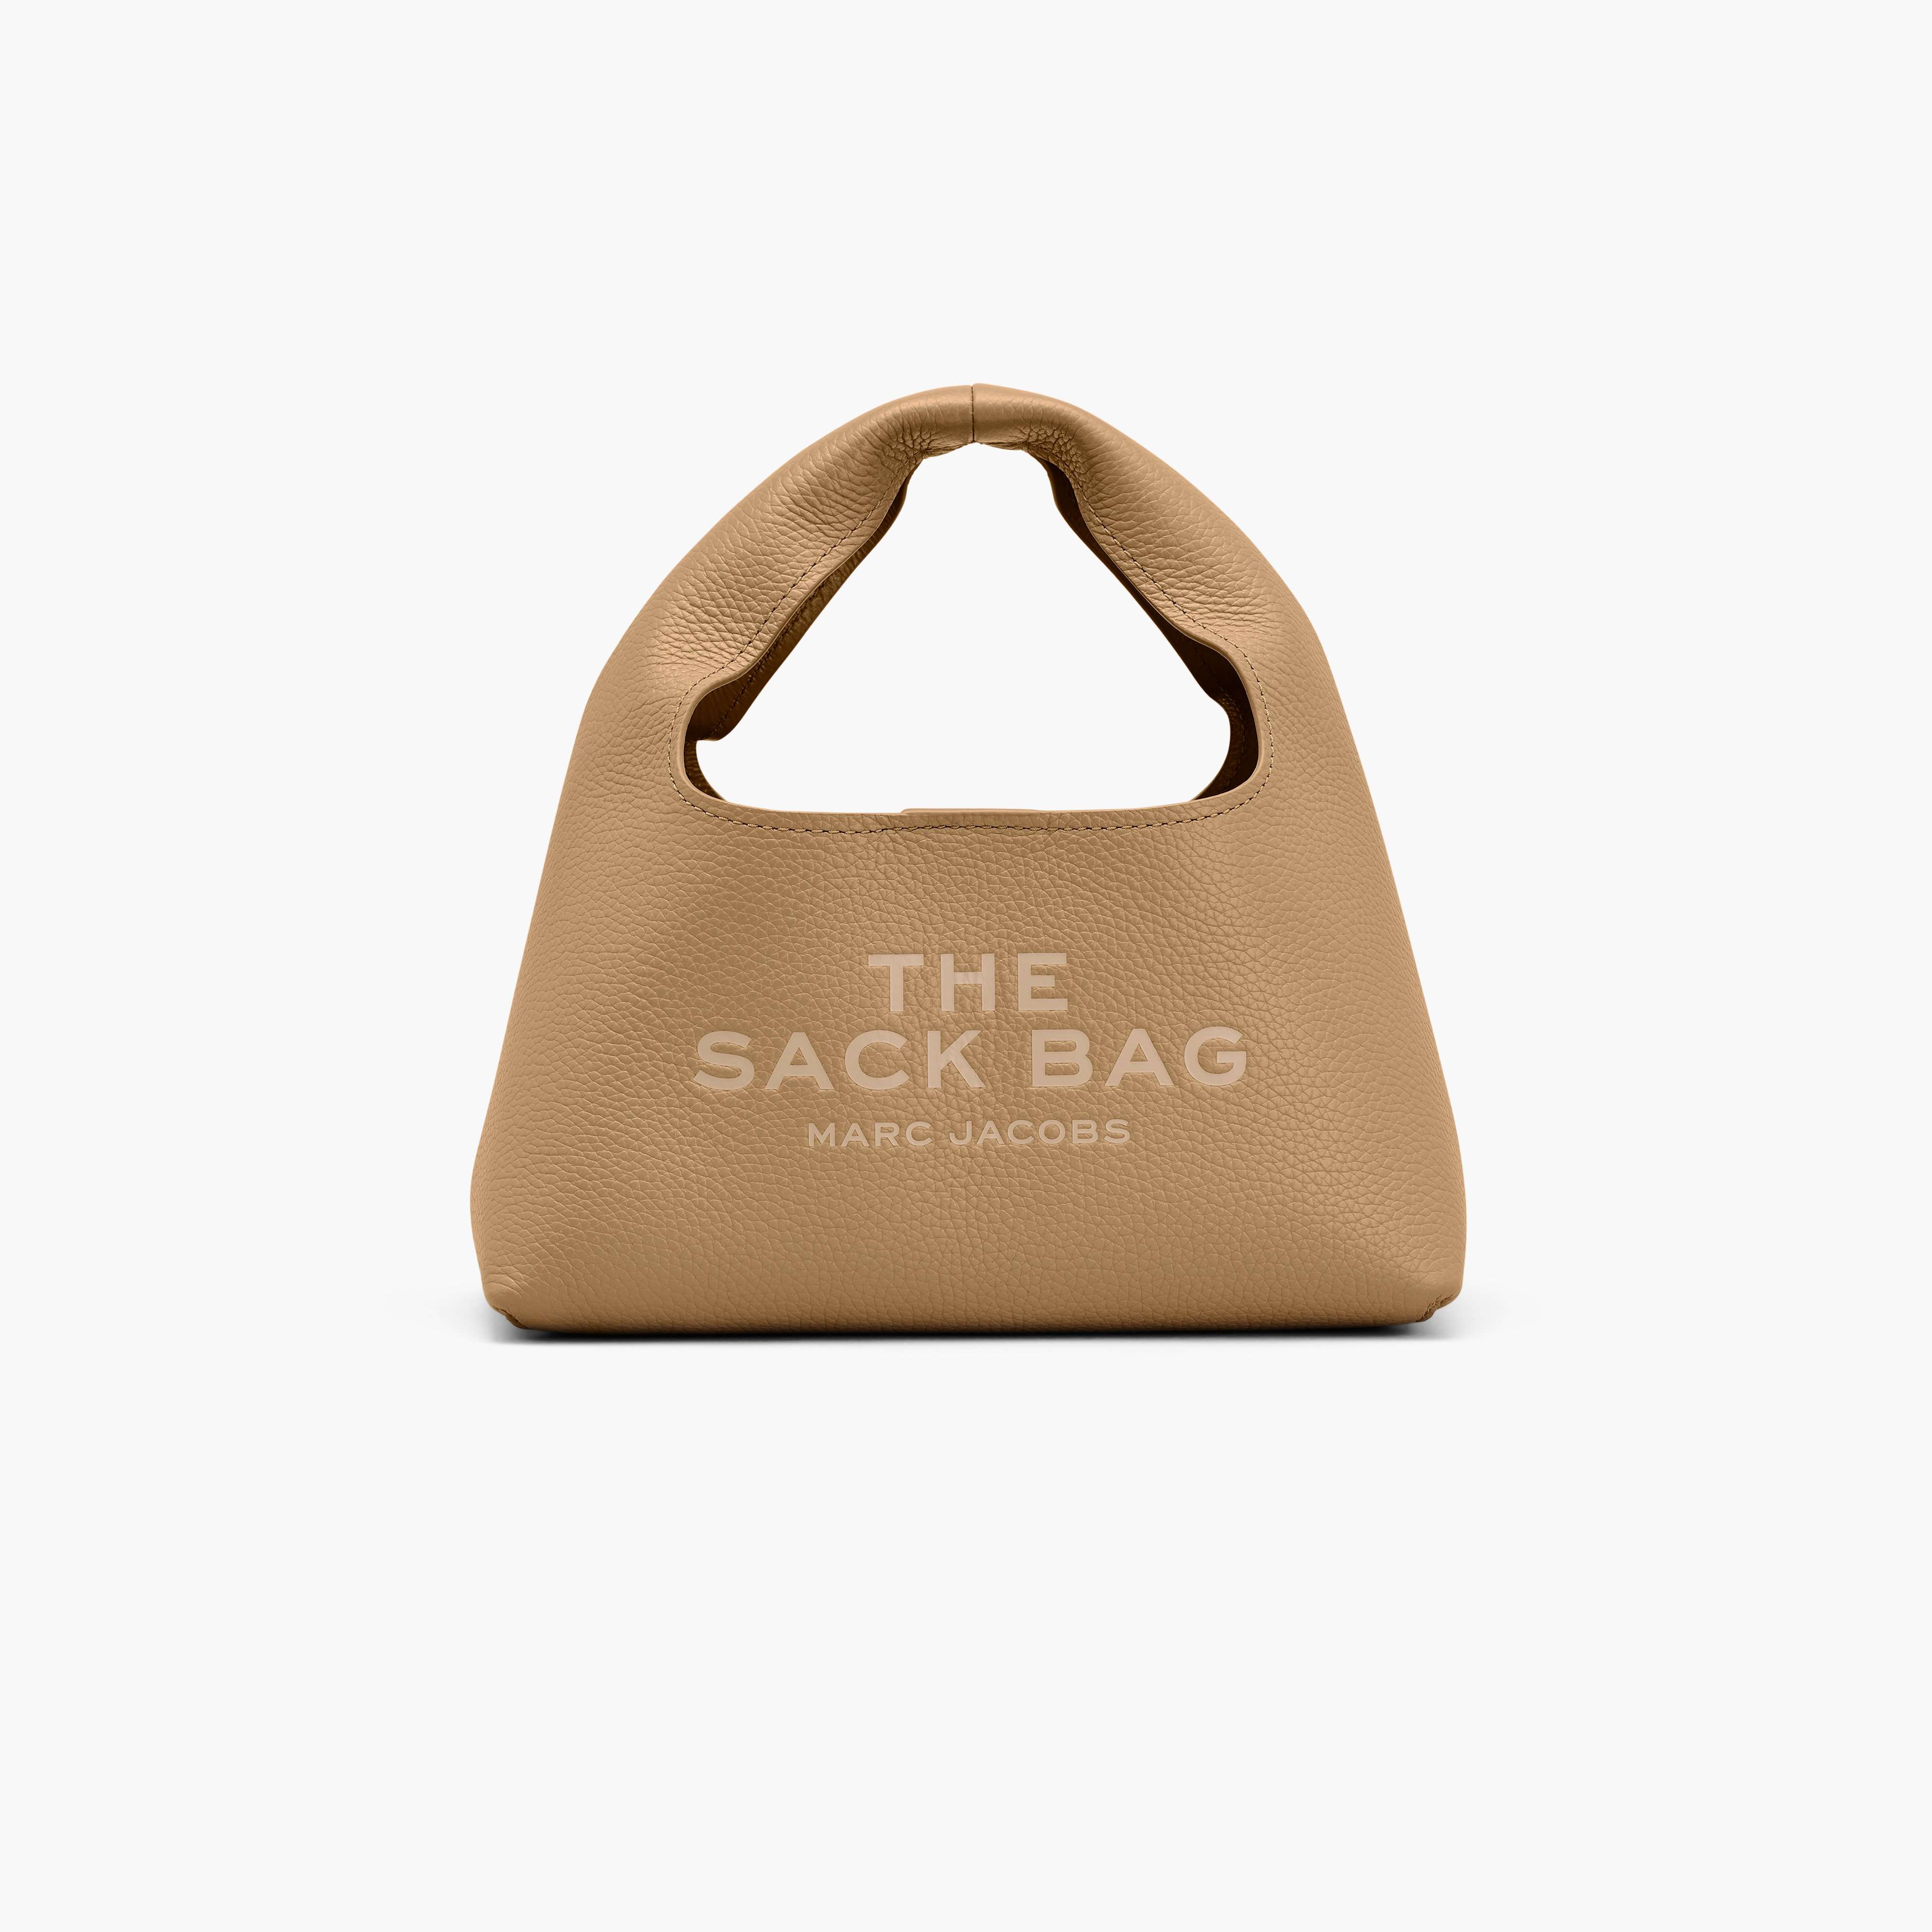 The Mini Sack Bag in Camel